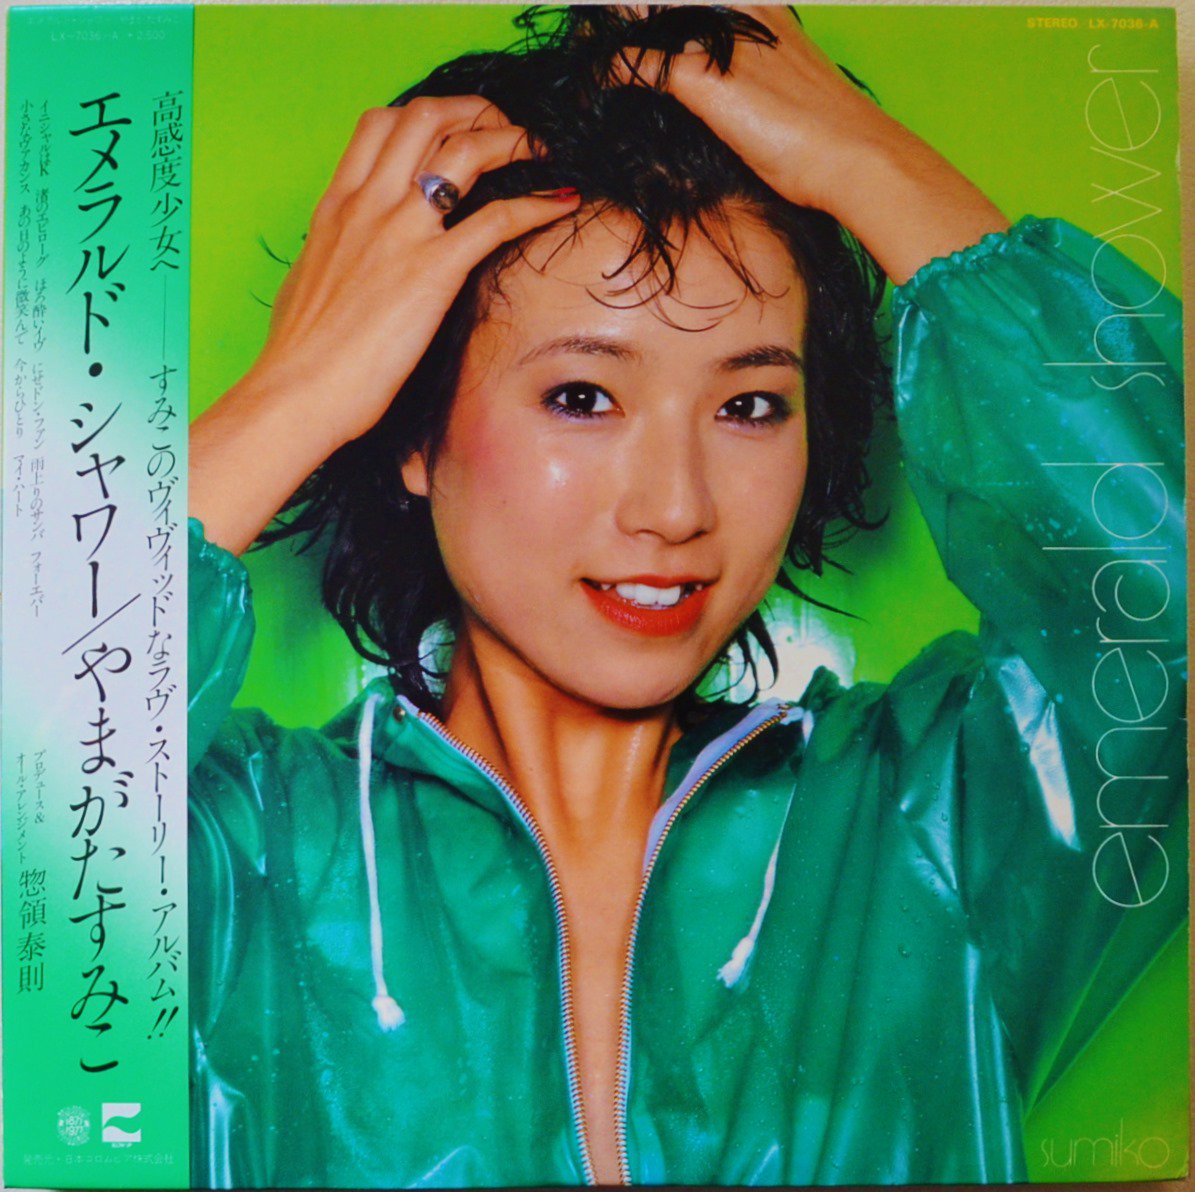 やまがたすみこ SUMIKO YAMAGATA / エメラルド・シャワー EMERALD SHOWER (LP)